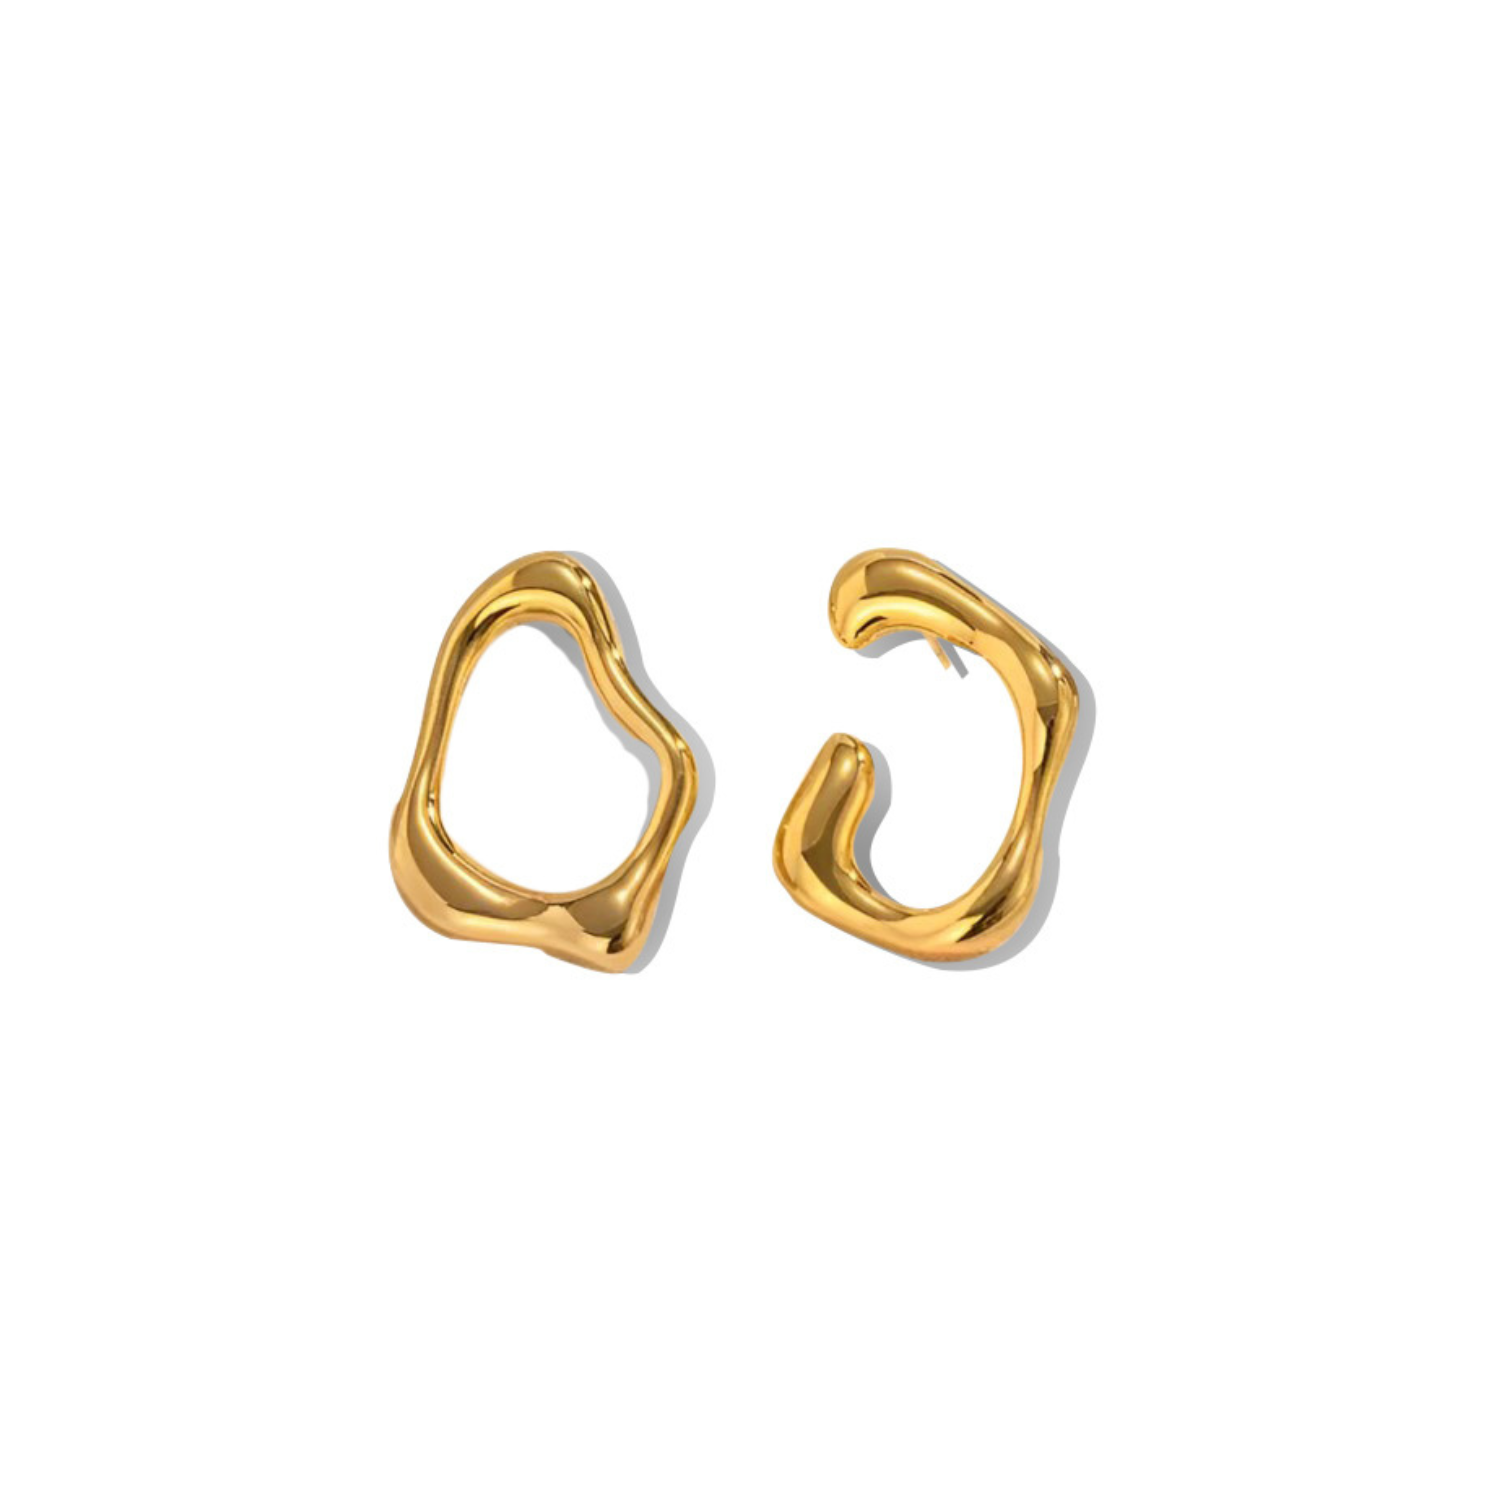 studs, earrings, gold earrings, mismatched earrings, organic shape earrings